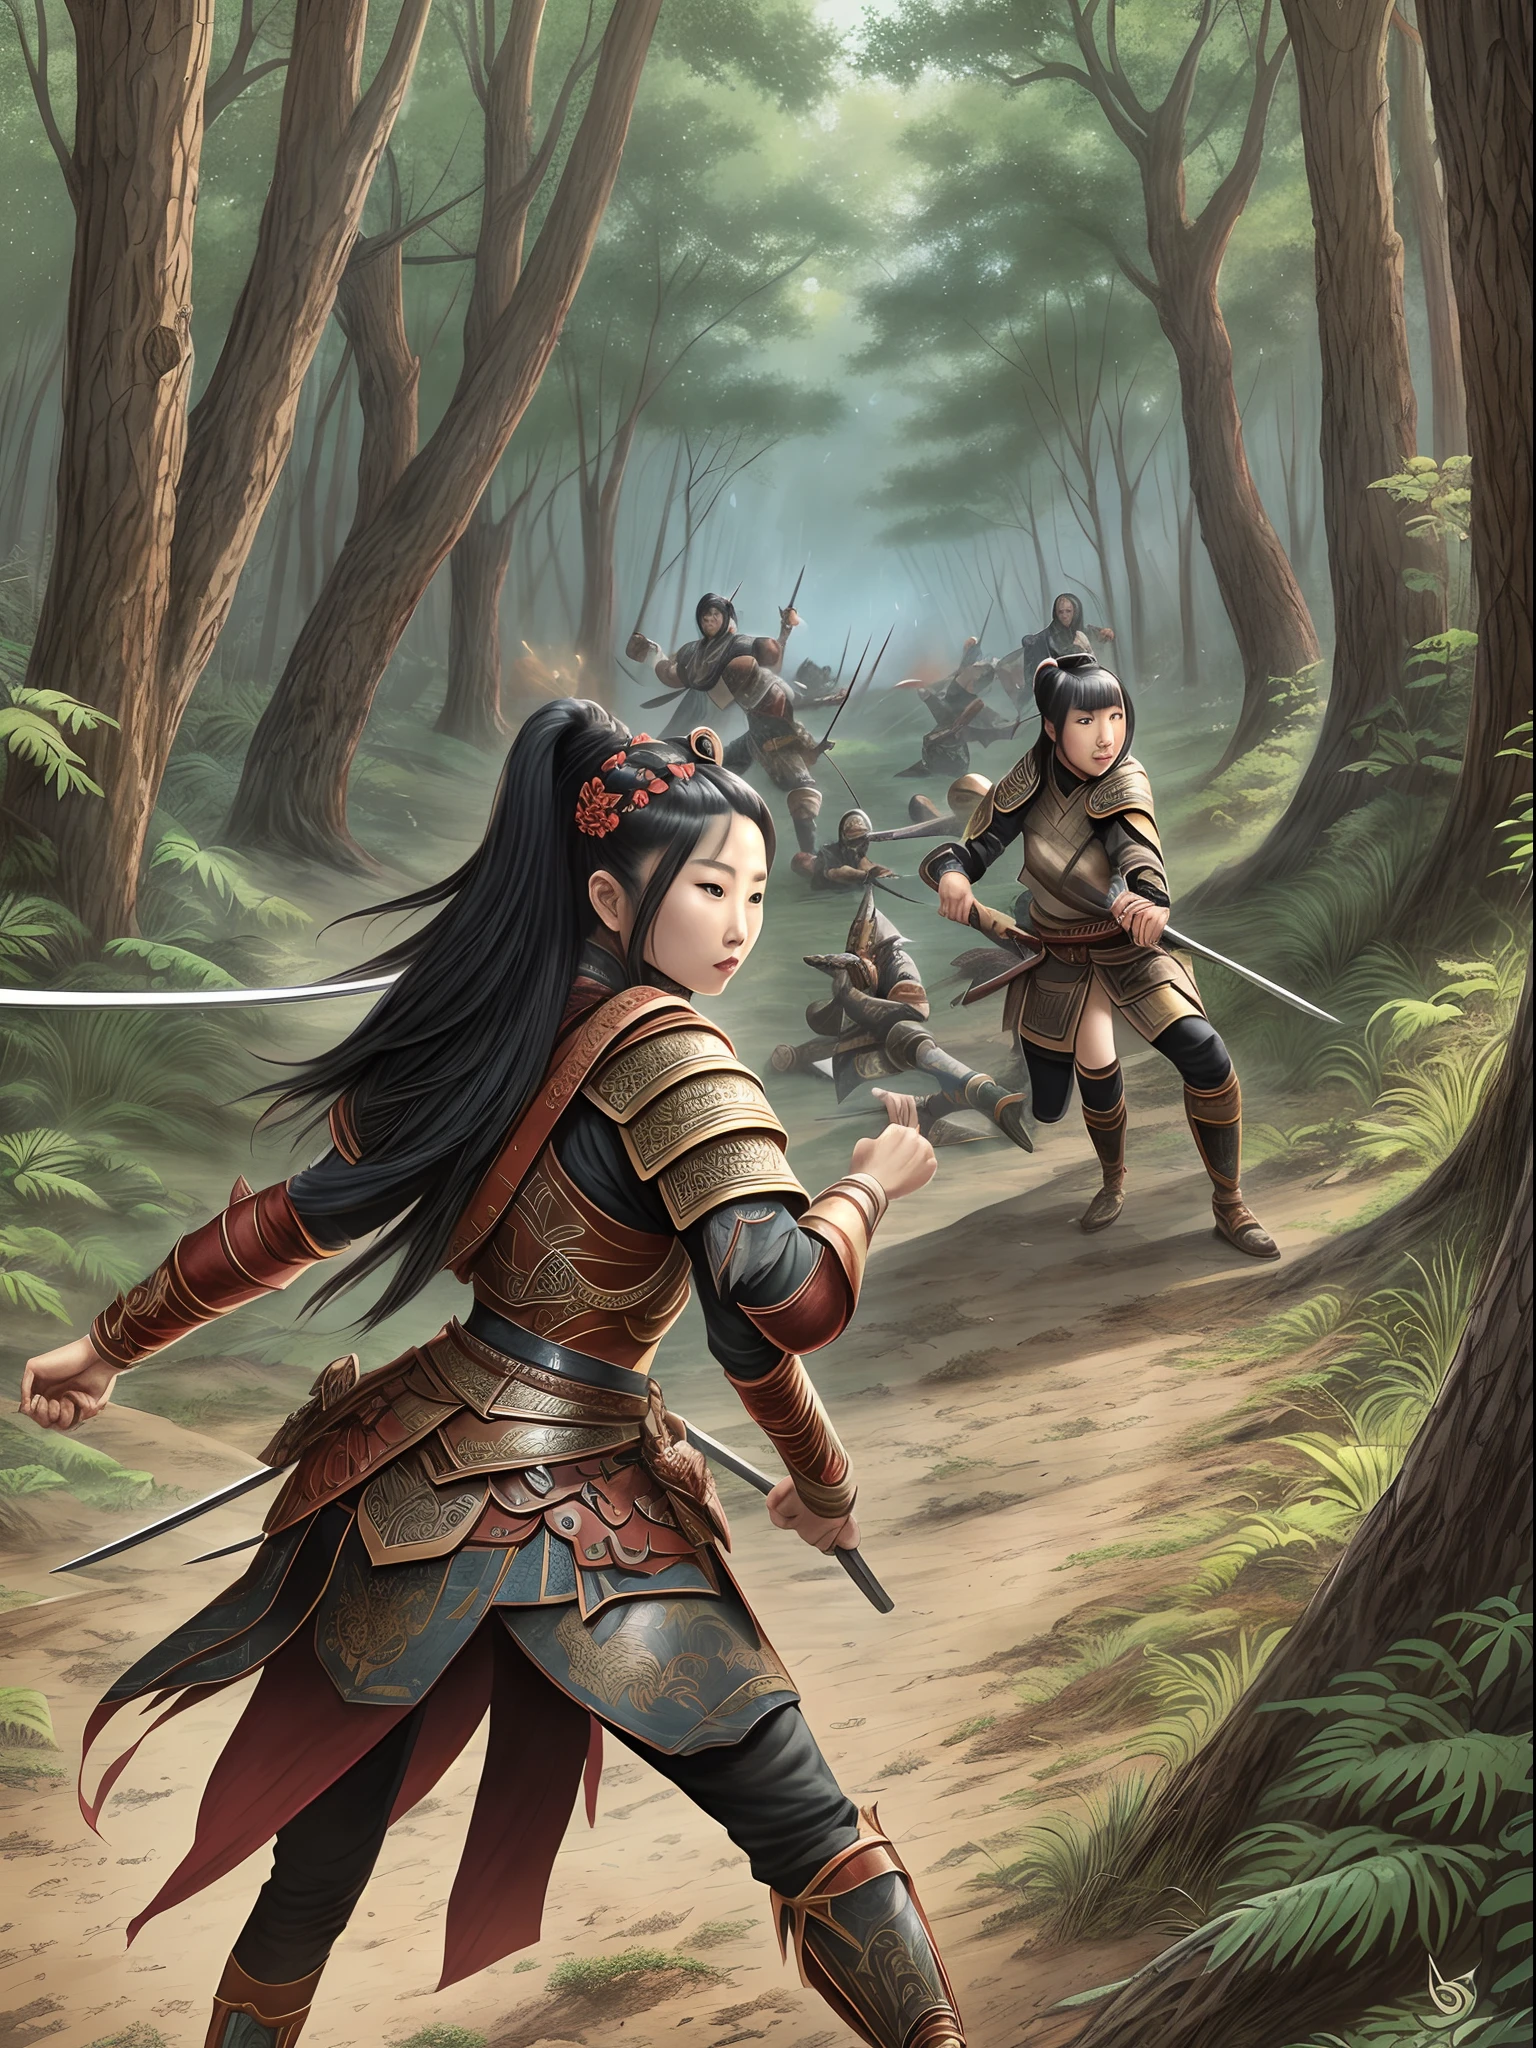 漫画艺术风格, 线条错综复杂，颜色自然柔和，精致整洁，中国女战士在森林里与一群野蛮人搏斗，战斗非常激烈